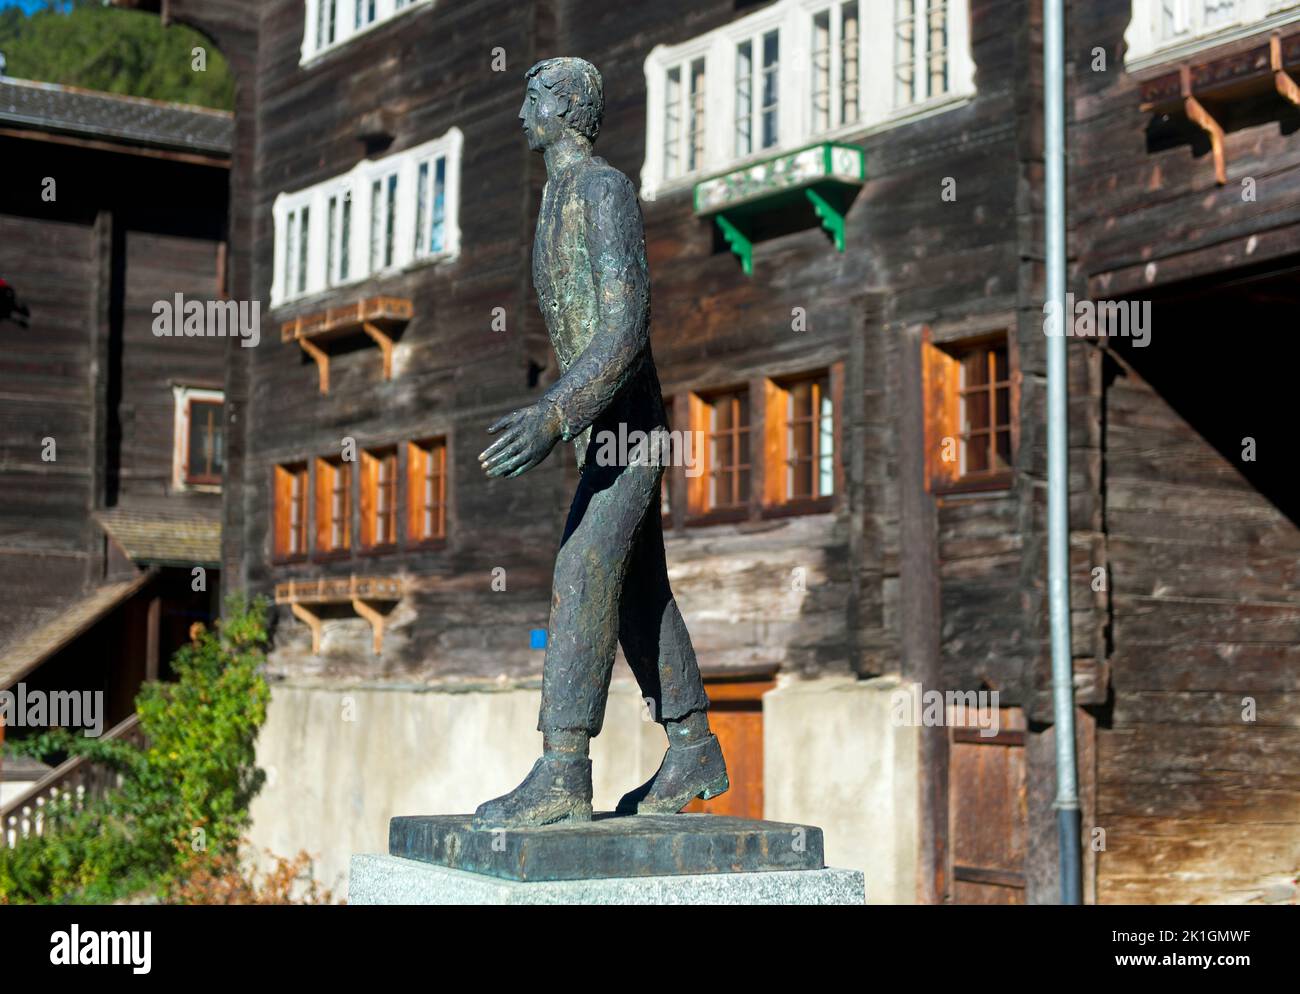 En el mundo, monumento a César Ritz, pionero de la industria hotelera de lujo, en su lugar de nacimiento Niederwald, Goms, Valais, Suiza Foto de stock